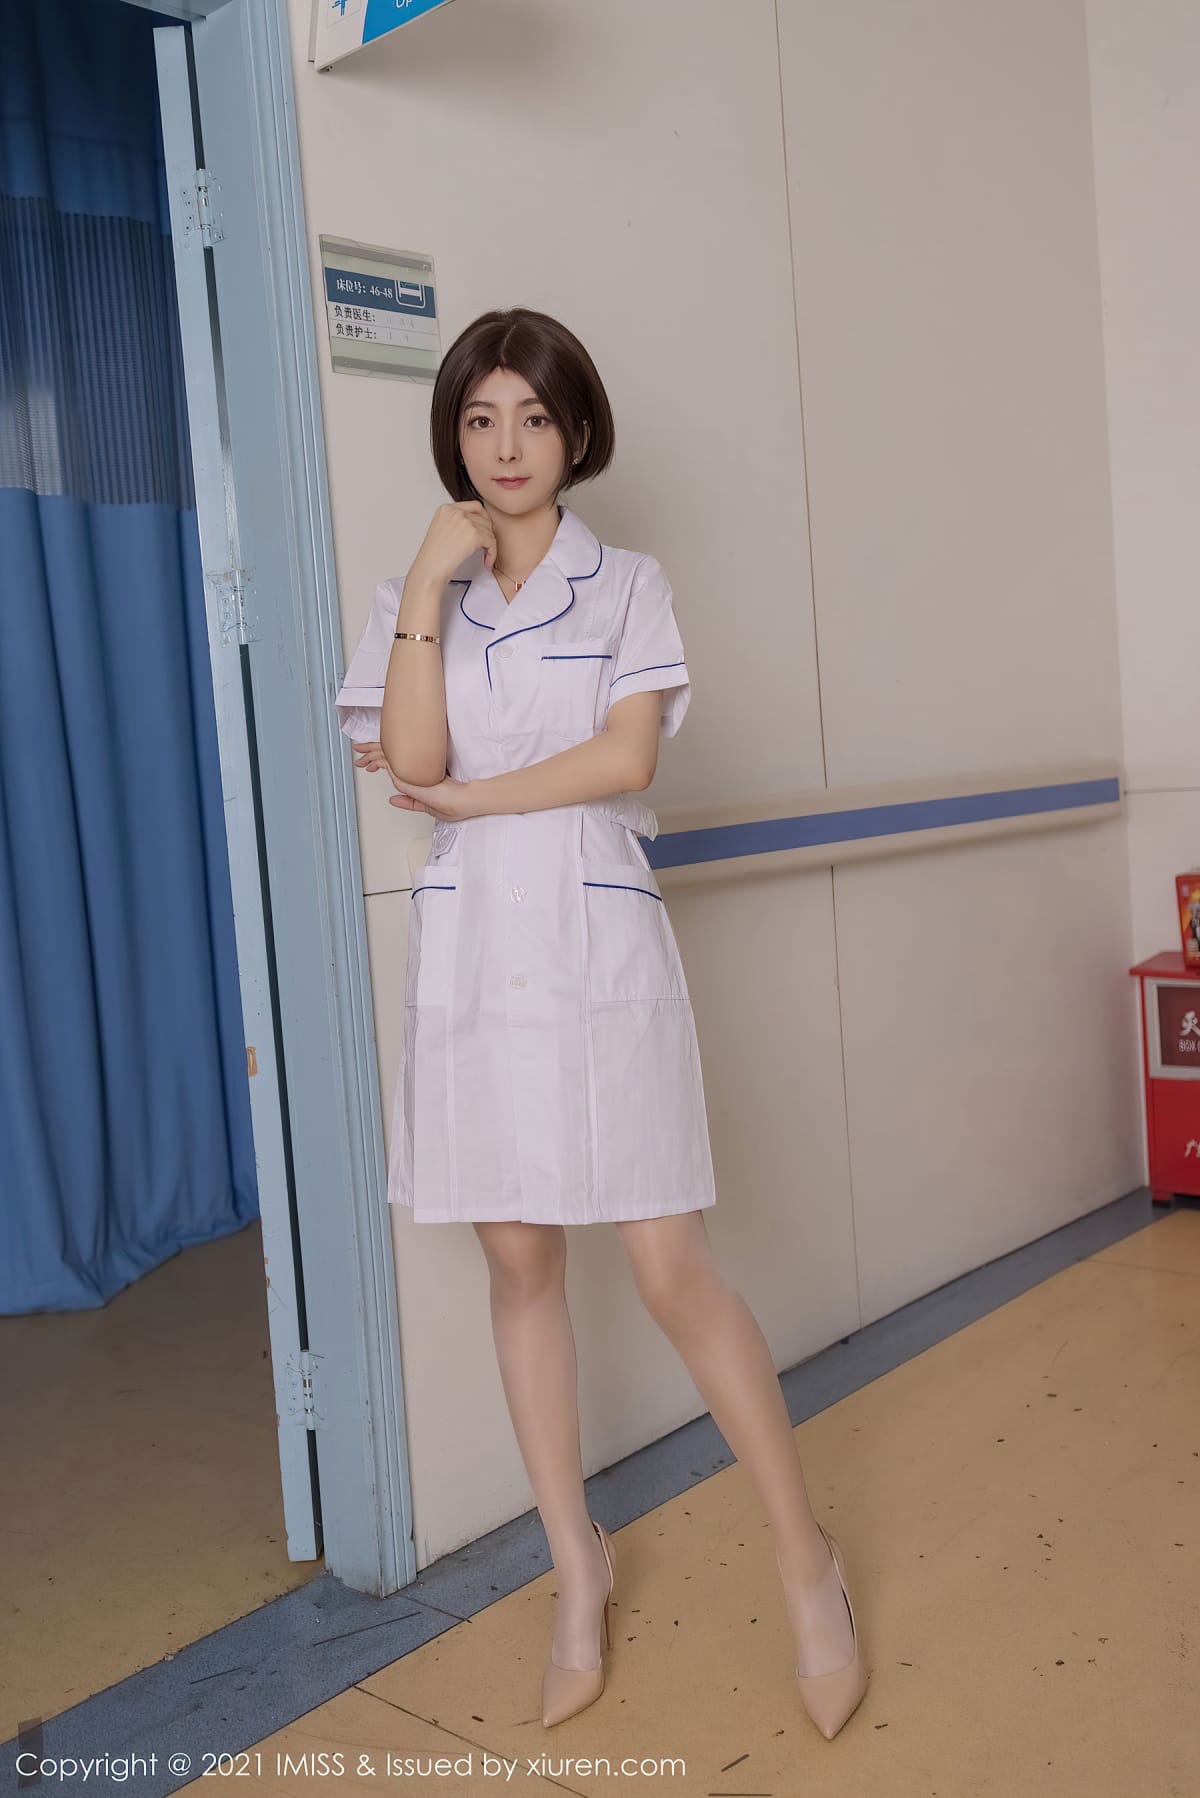 性感女神Angela00 - 护士制服+美腿系列写真